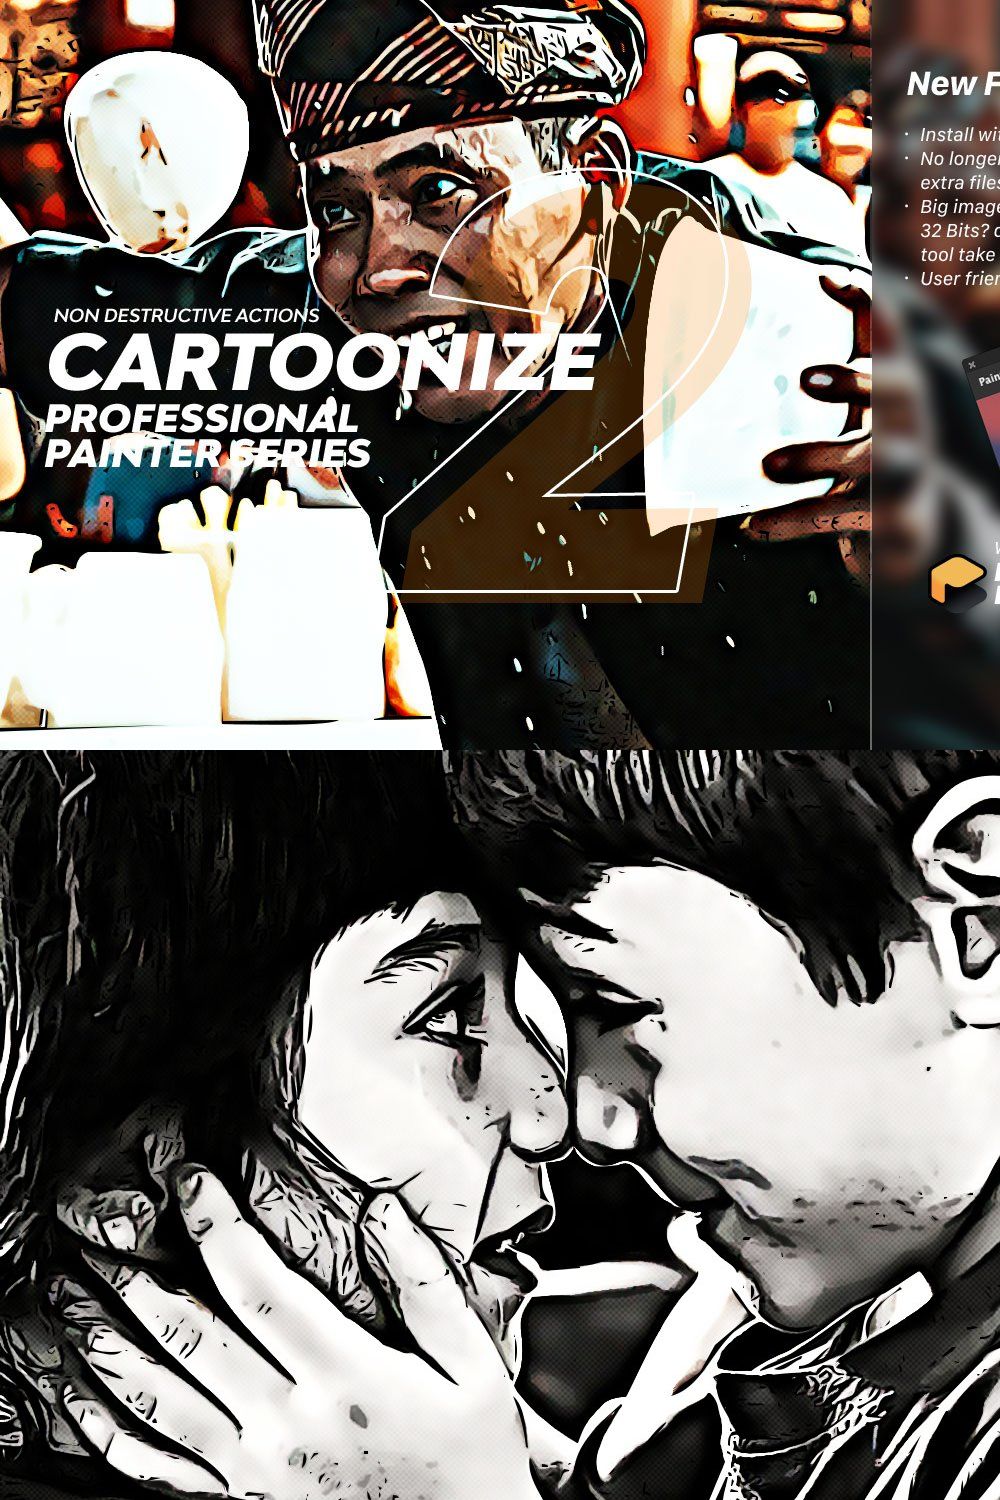 PainterBox | Cartoonize 2 pinterest preview image.